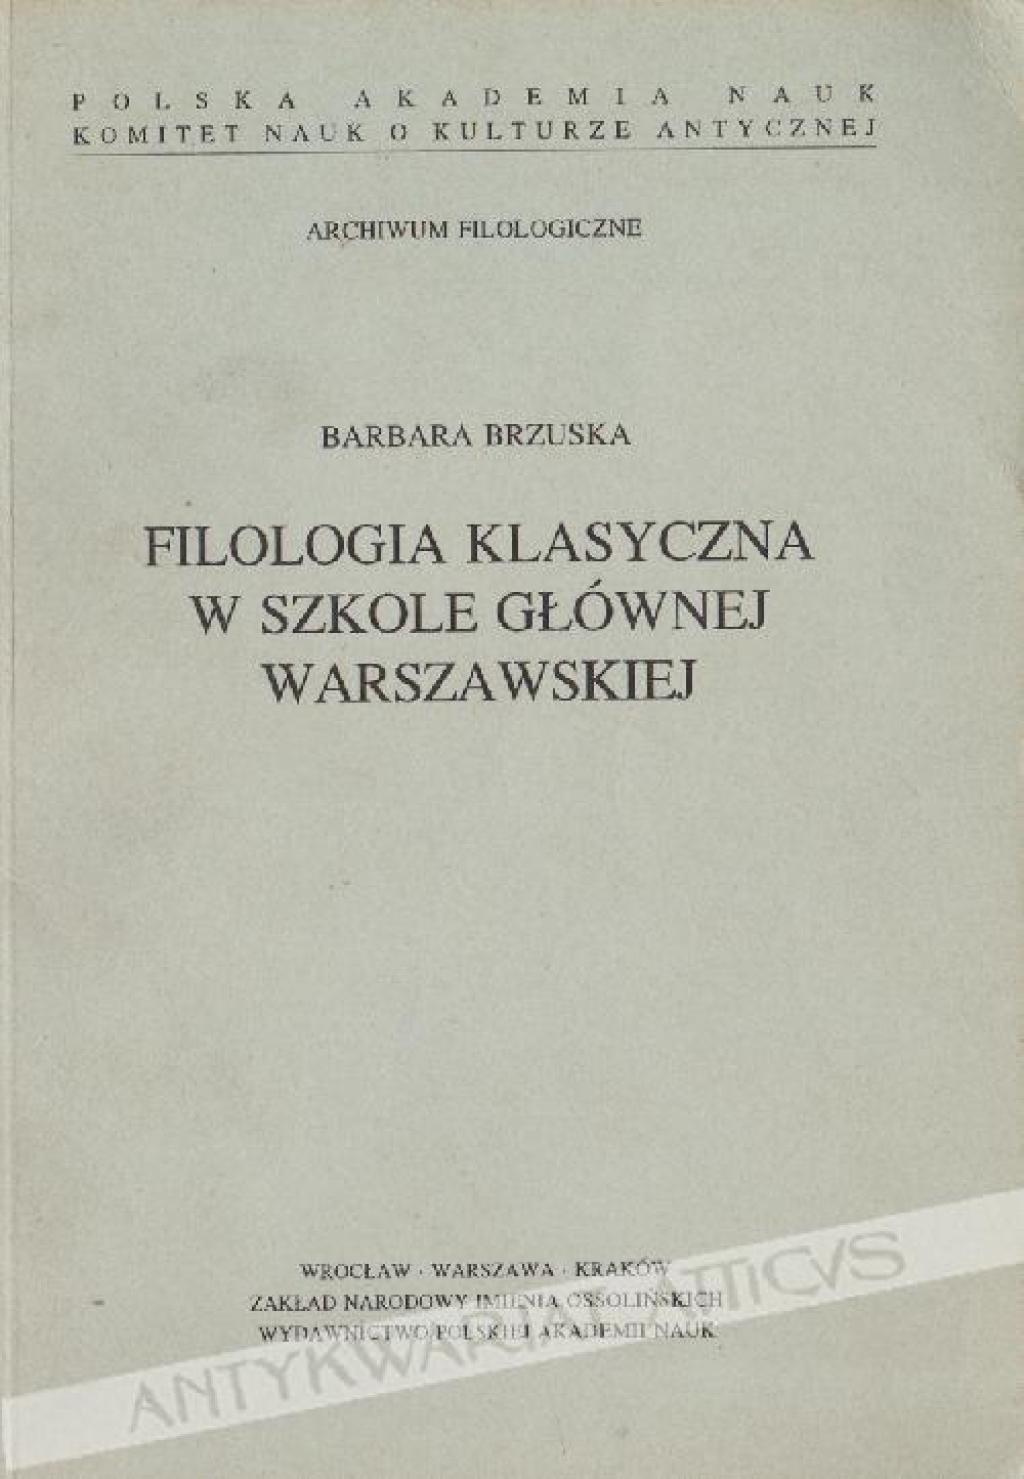 Filologia klasyczna w Szkole Głównej Warszawskiej